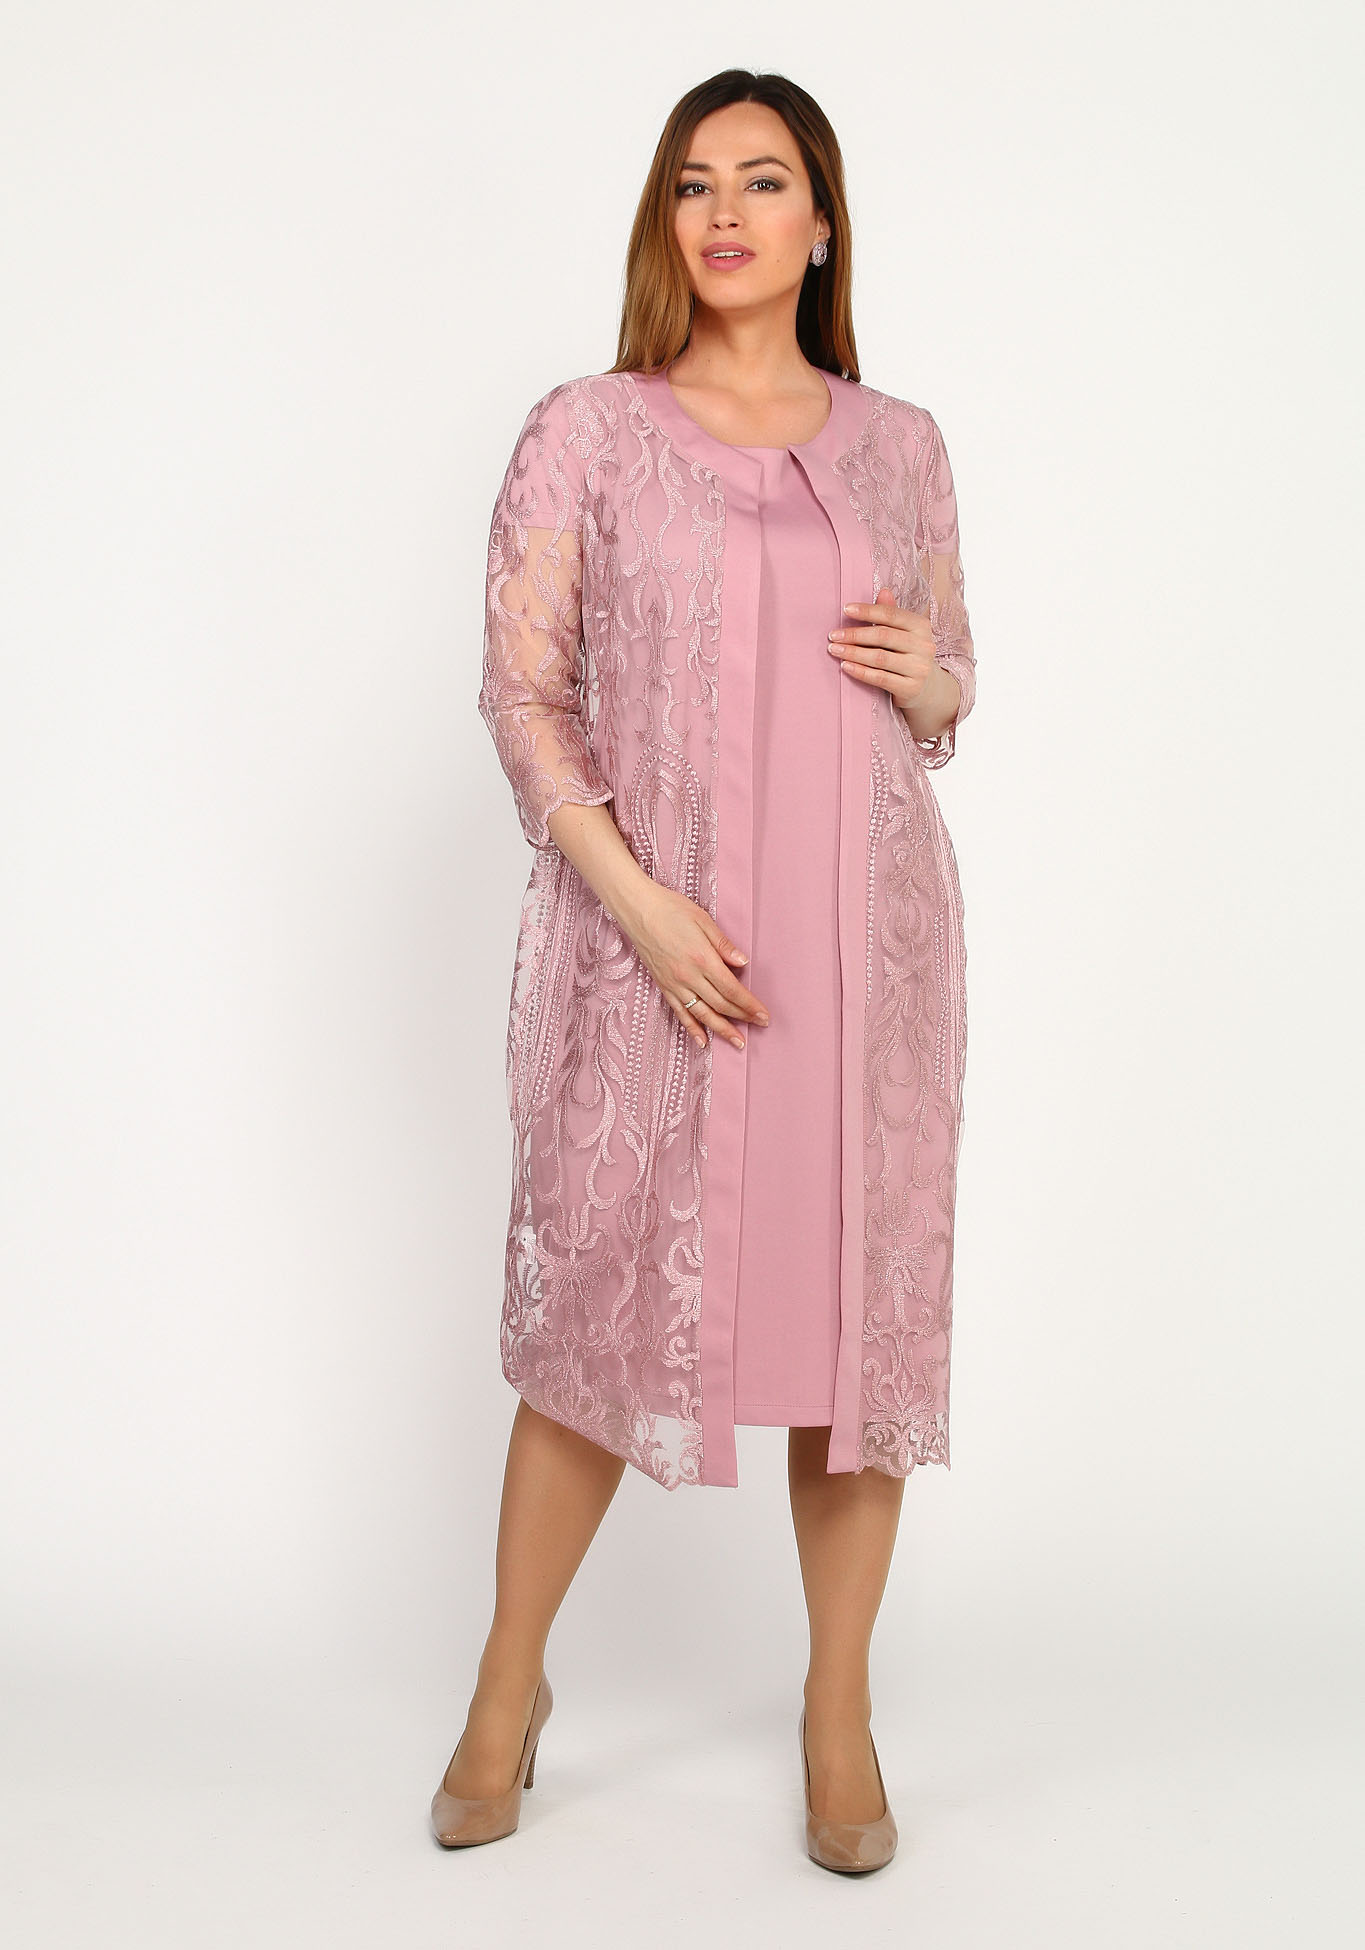 Комплект: платье и кружевная накидка Bel Fiore, размер 48, цвет розовый - фото 3